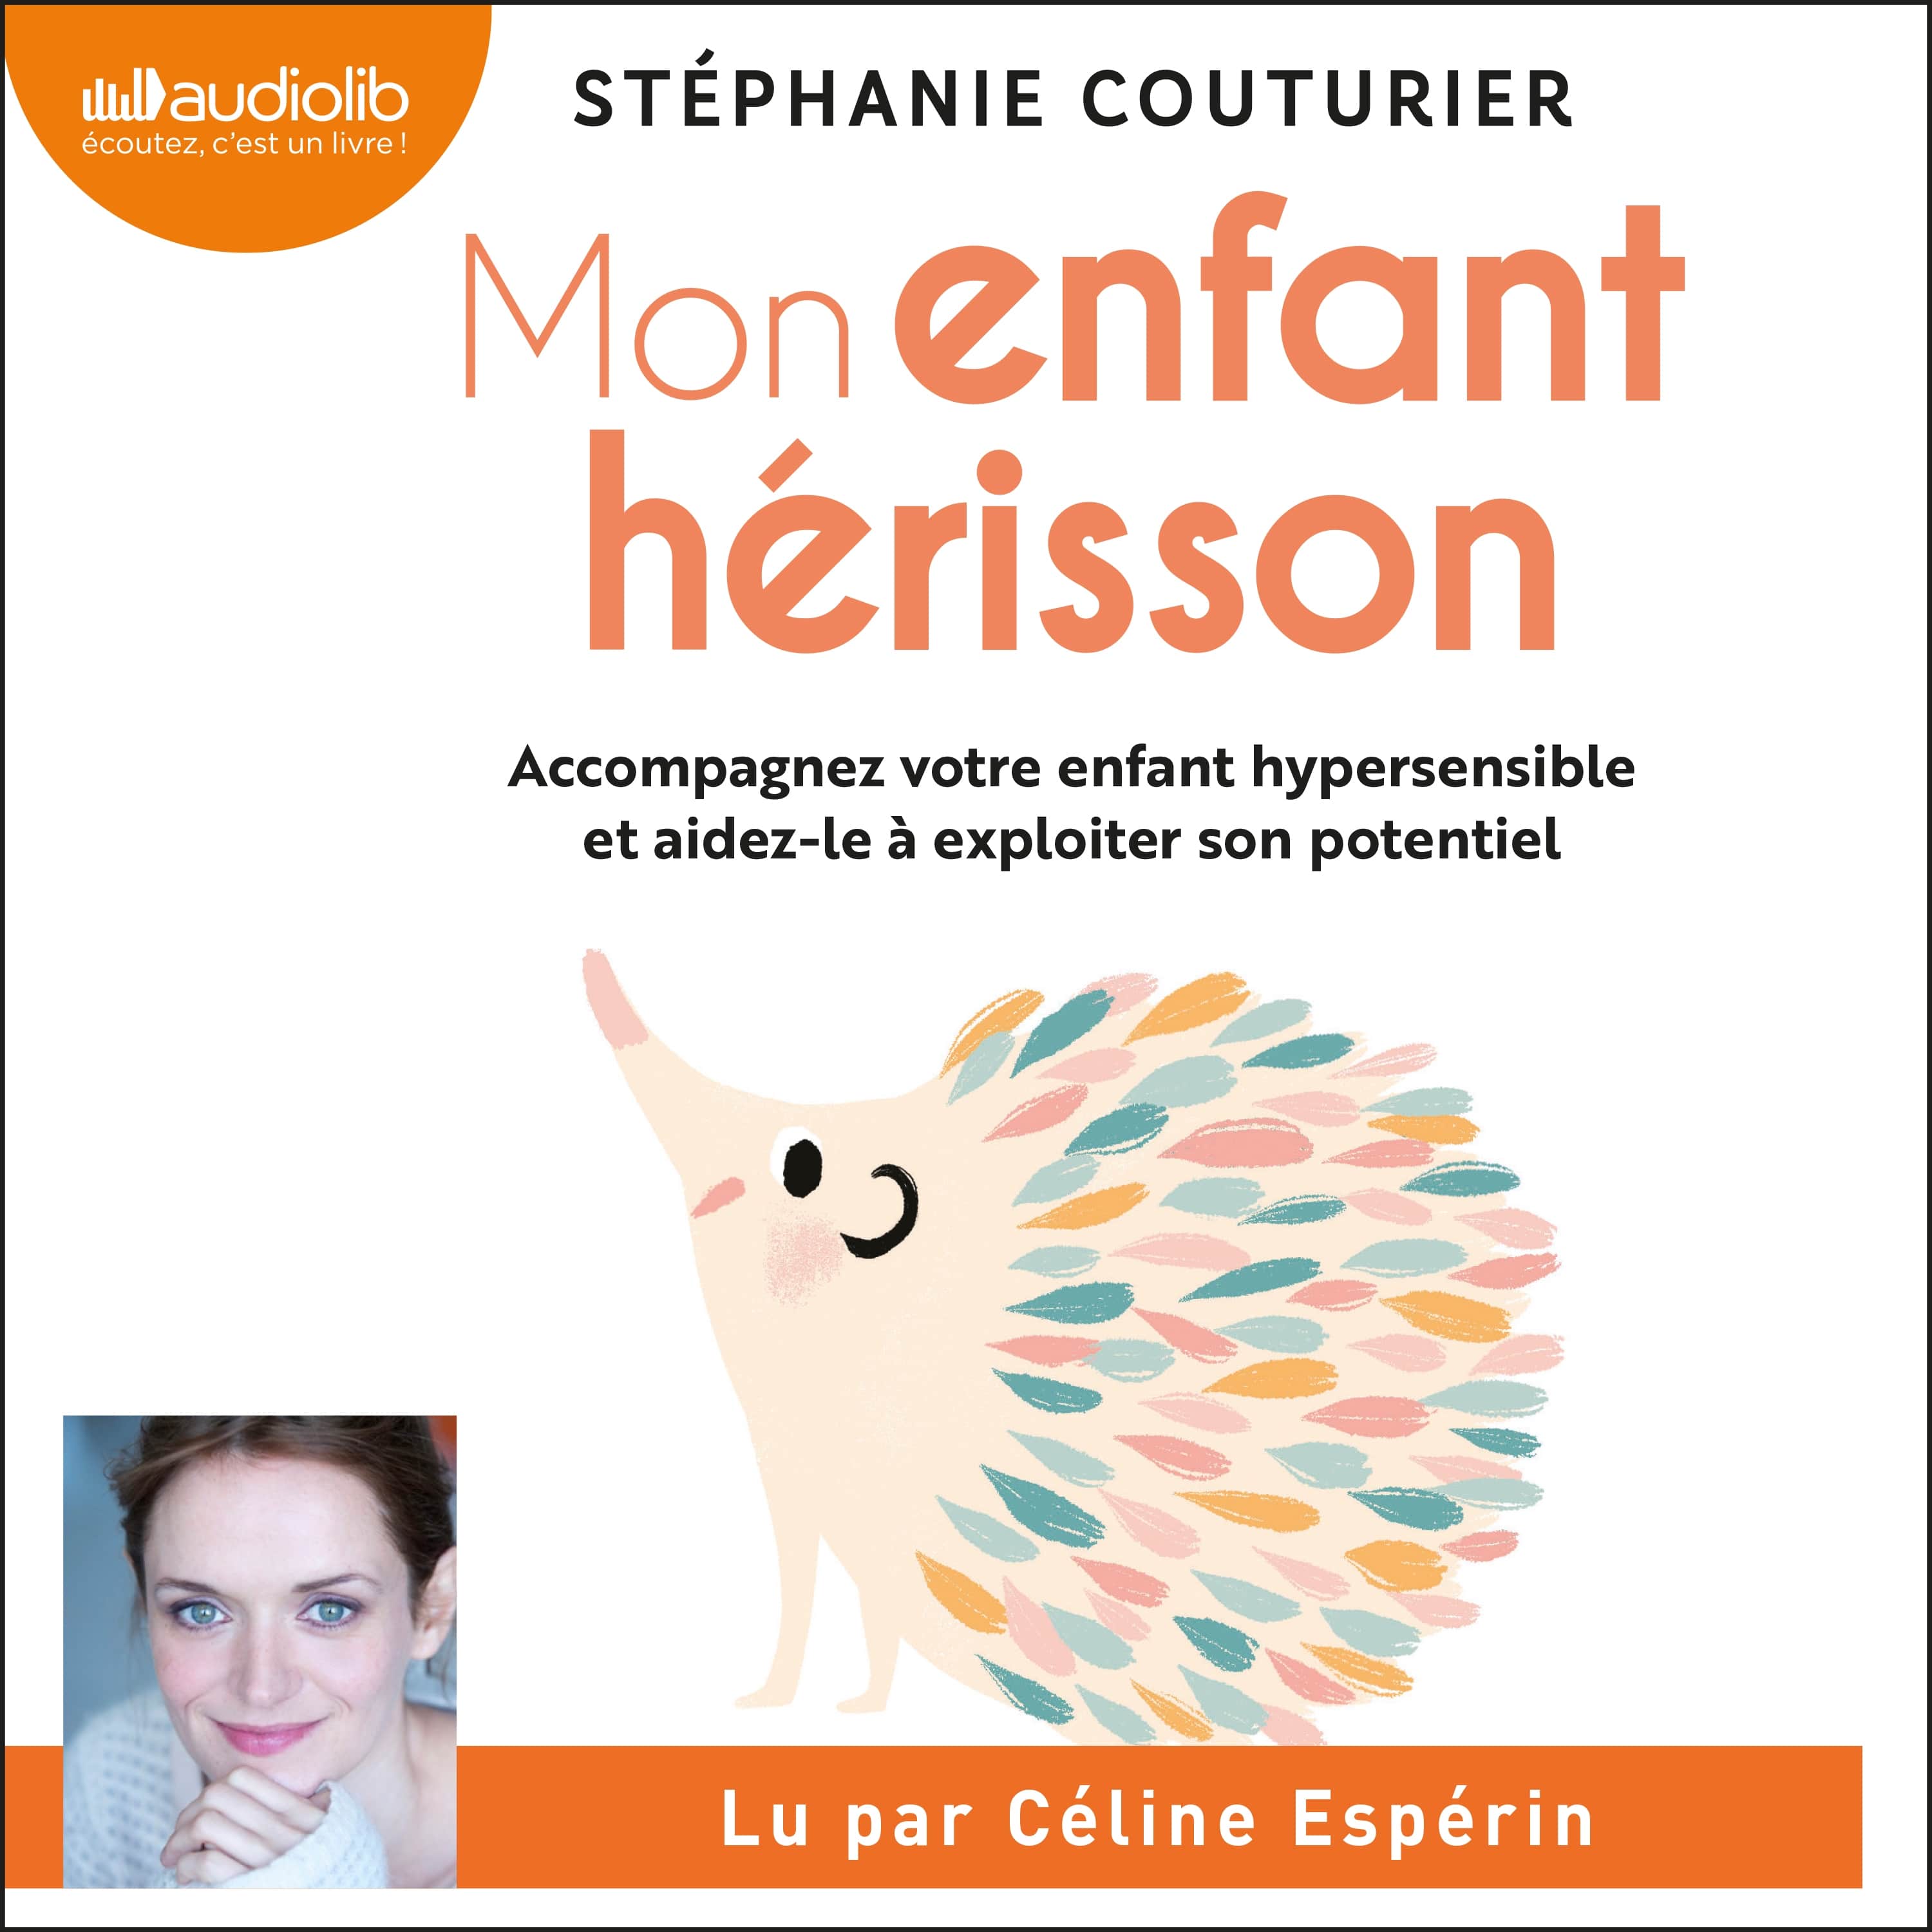 Couverture du livre audio Mon enfant hérisson De Stéphanie Couturier 